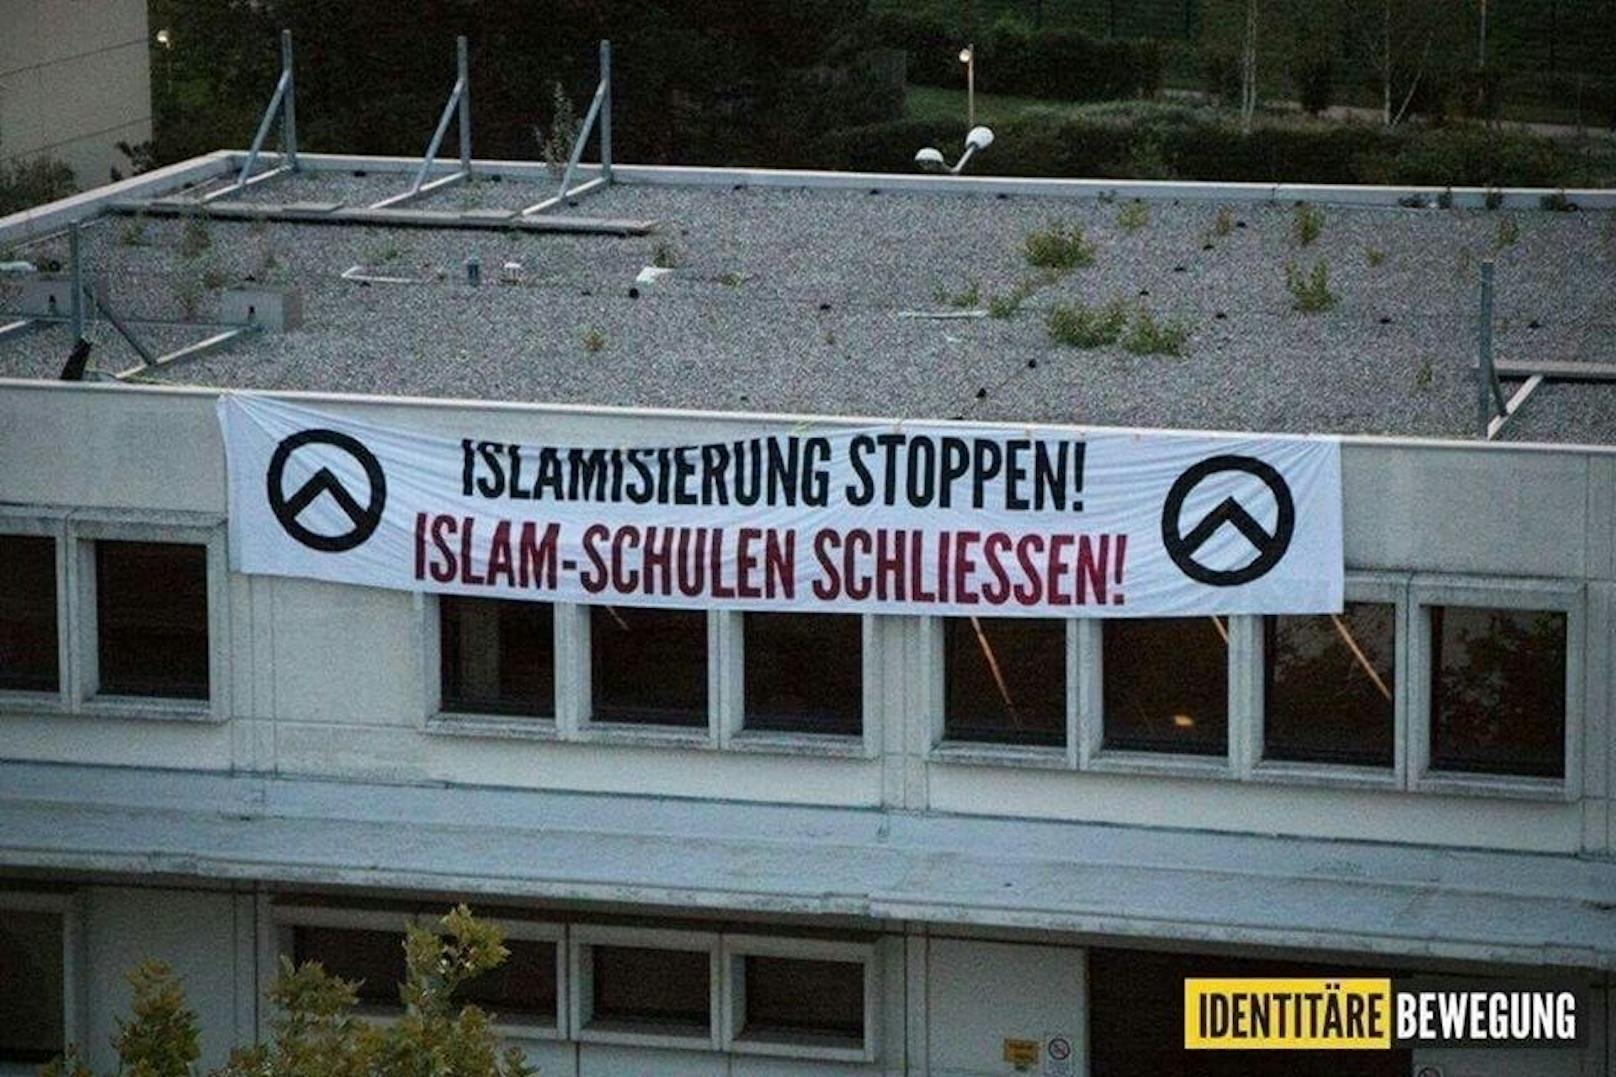 Identitäre haben an der islamischen Schule in Wien-Liesing ein rassistisches Plakat aufgehängt